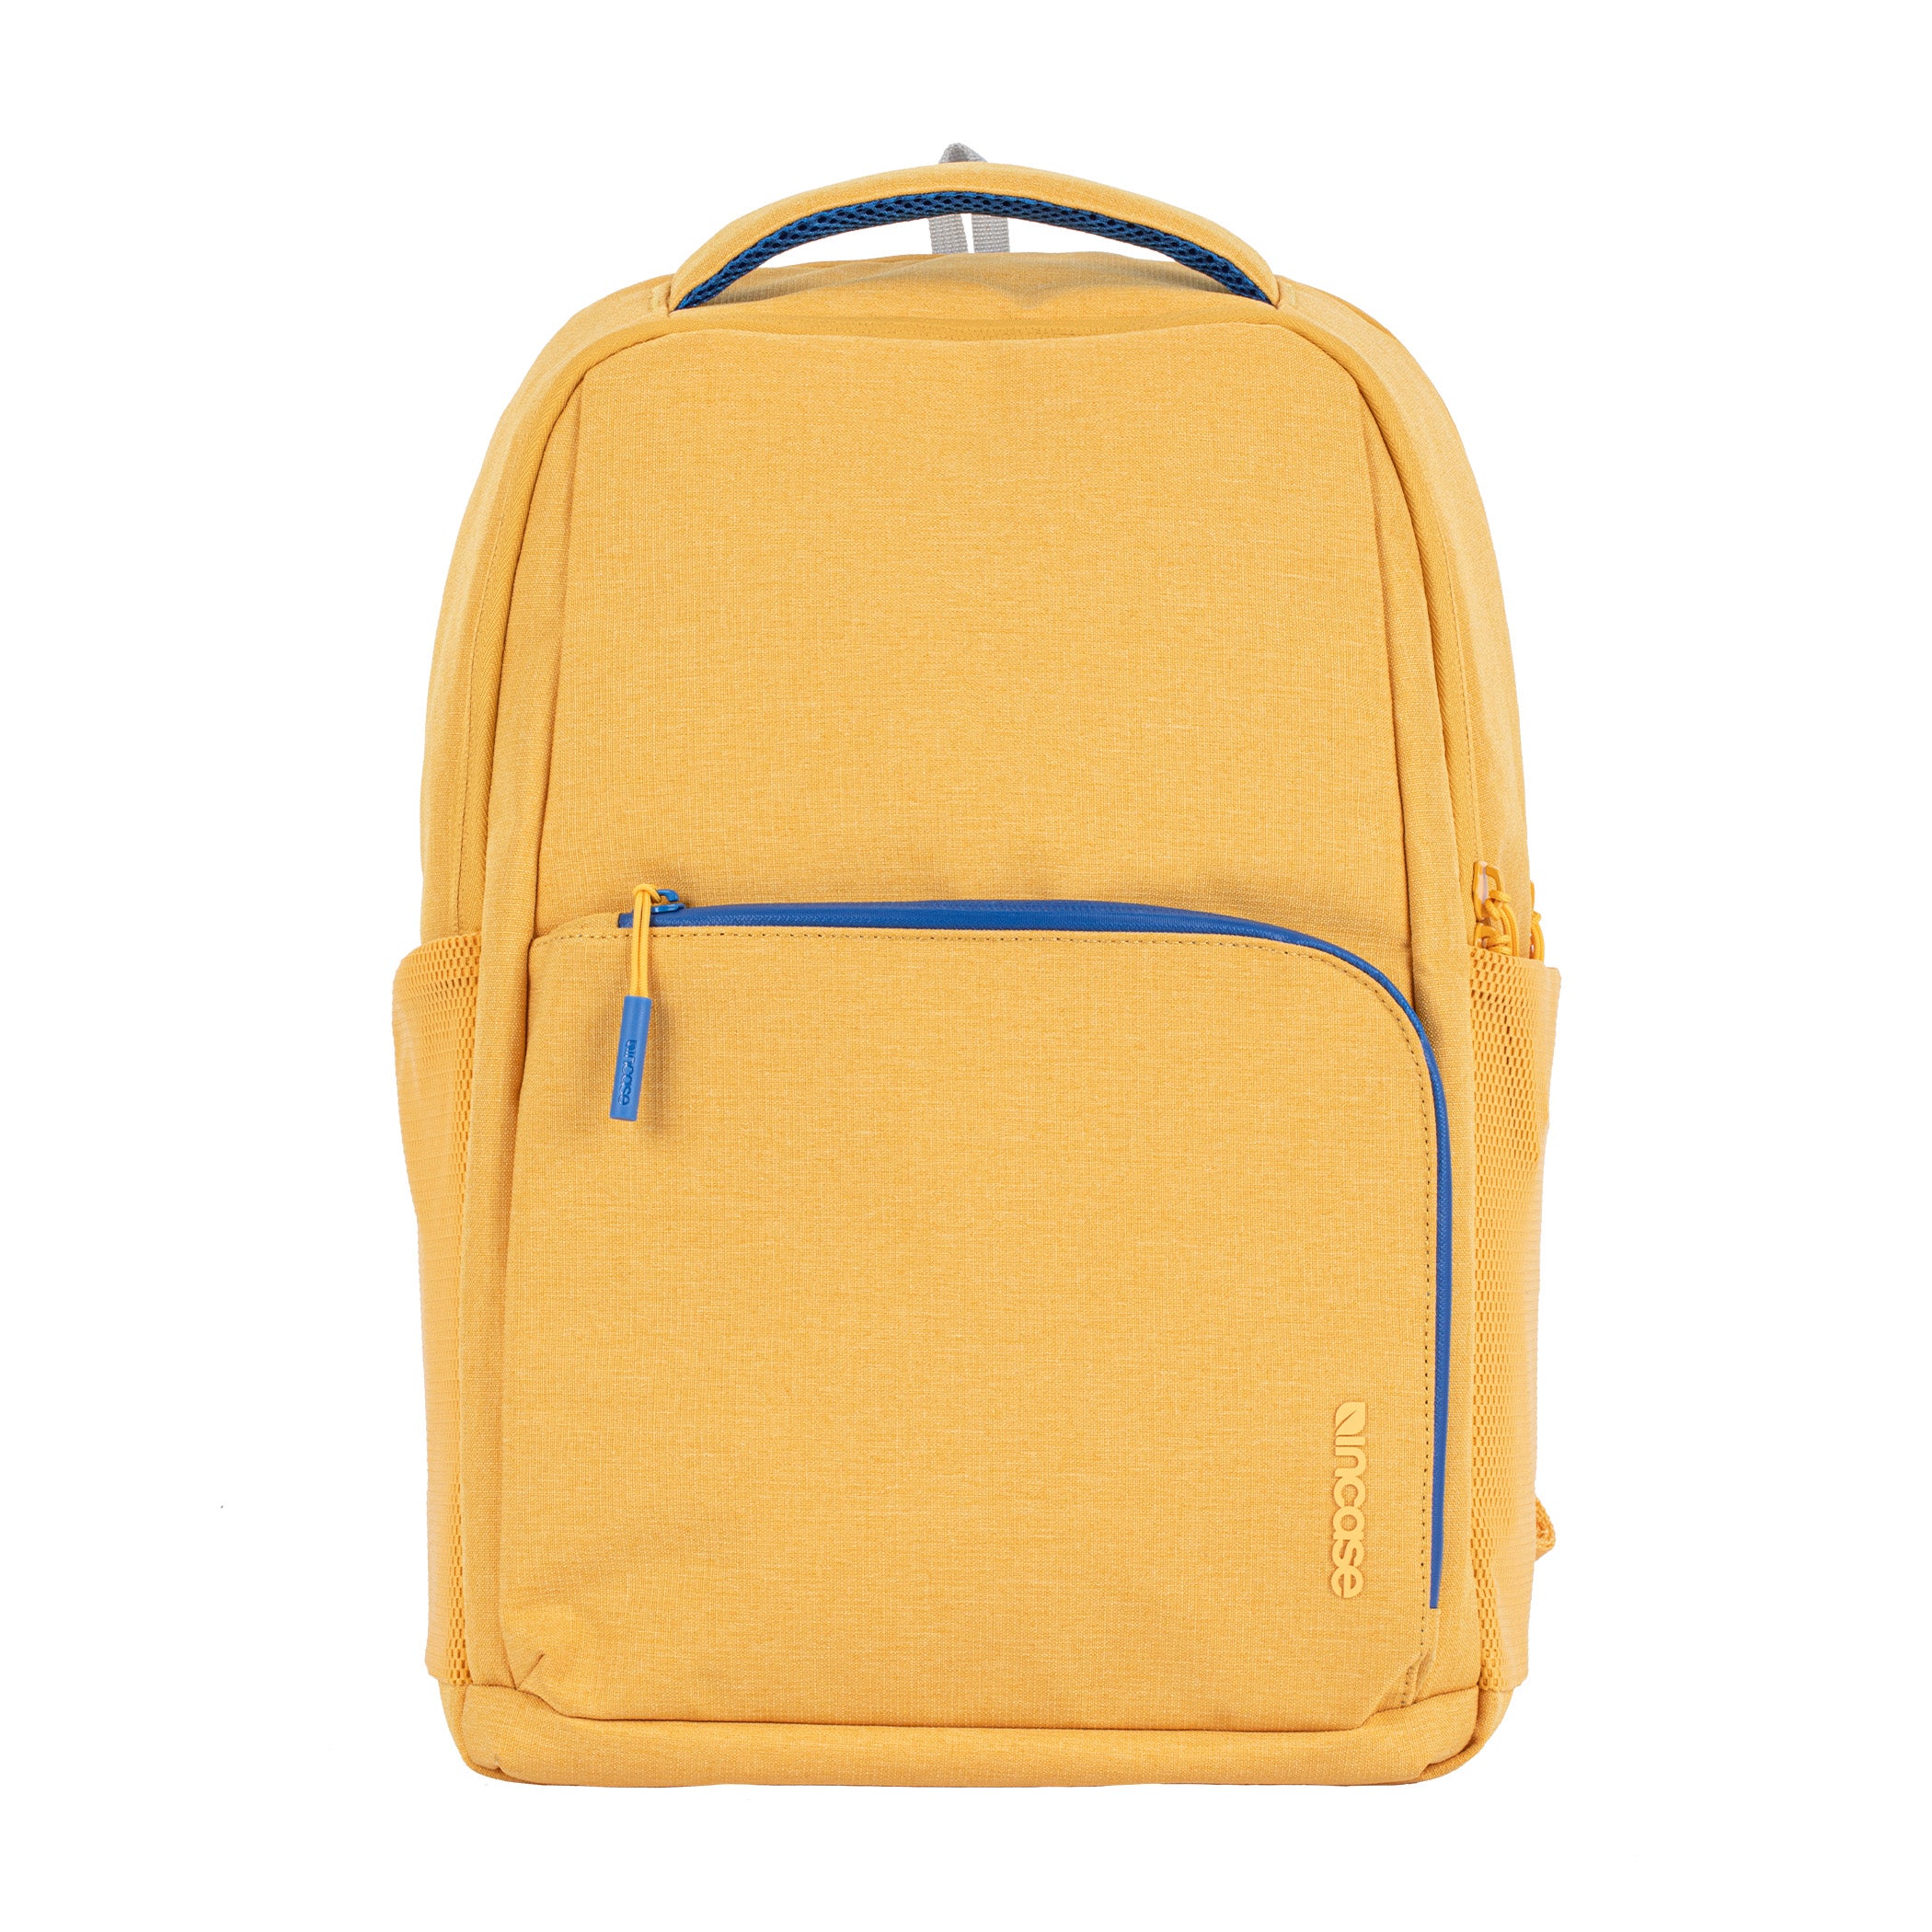 ファセット 20l バックパック(Facet 20L Backpack) - Yellow(イエロー) - Incase（インケース）公式通販